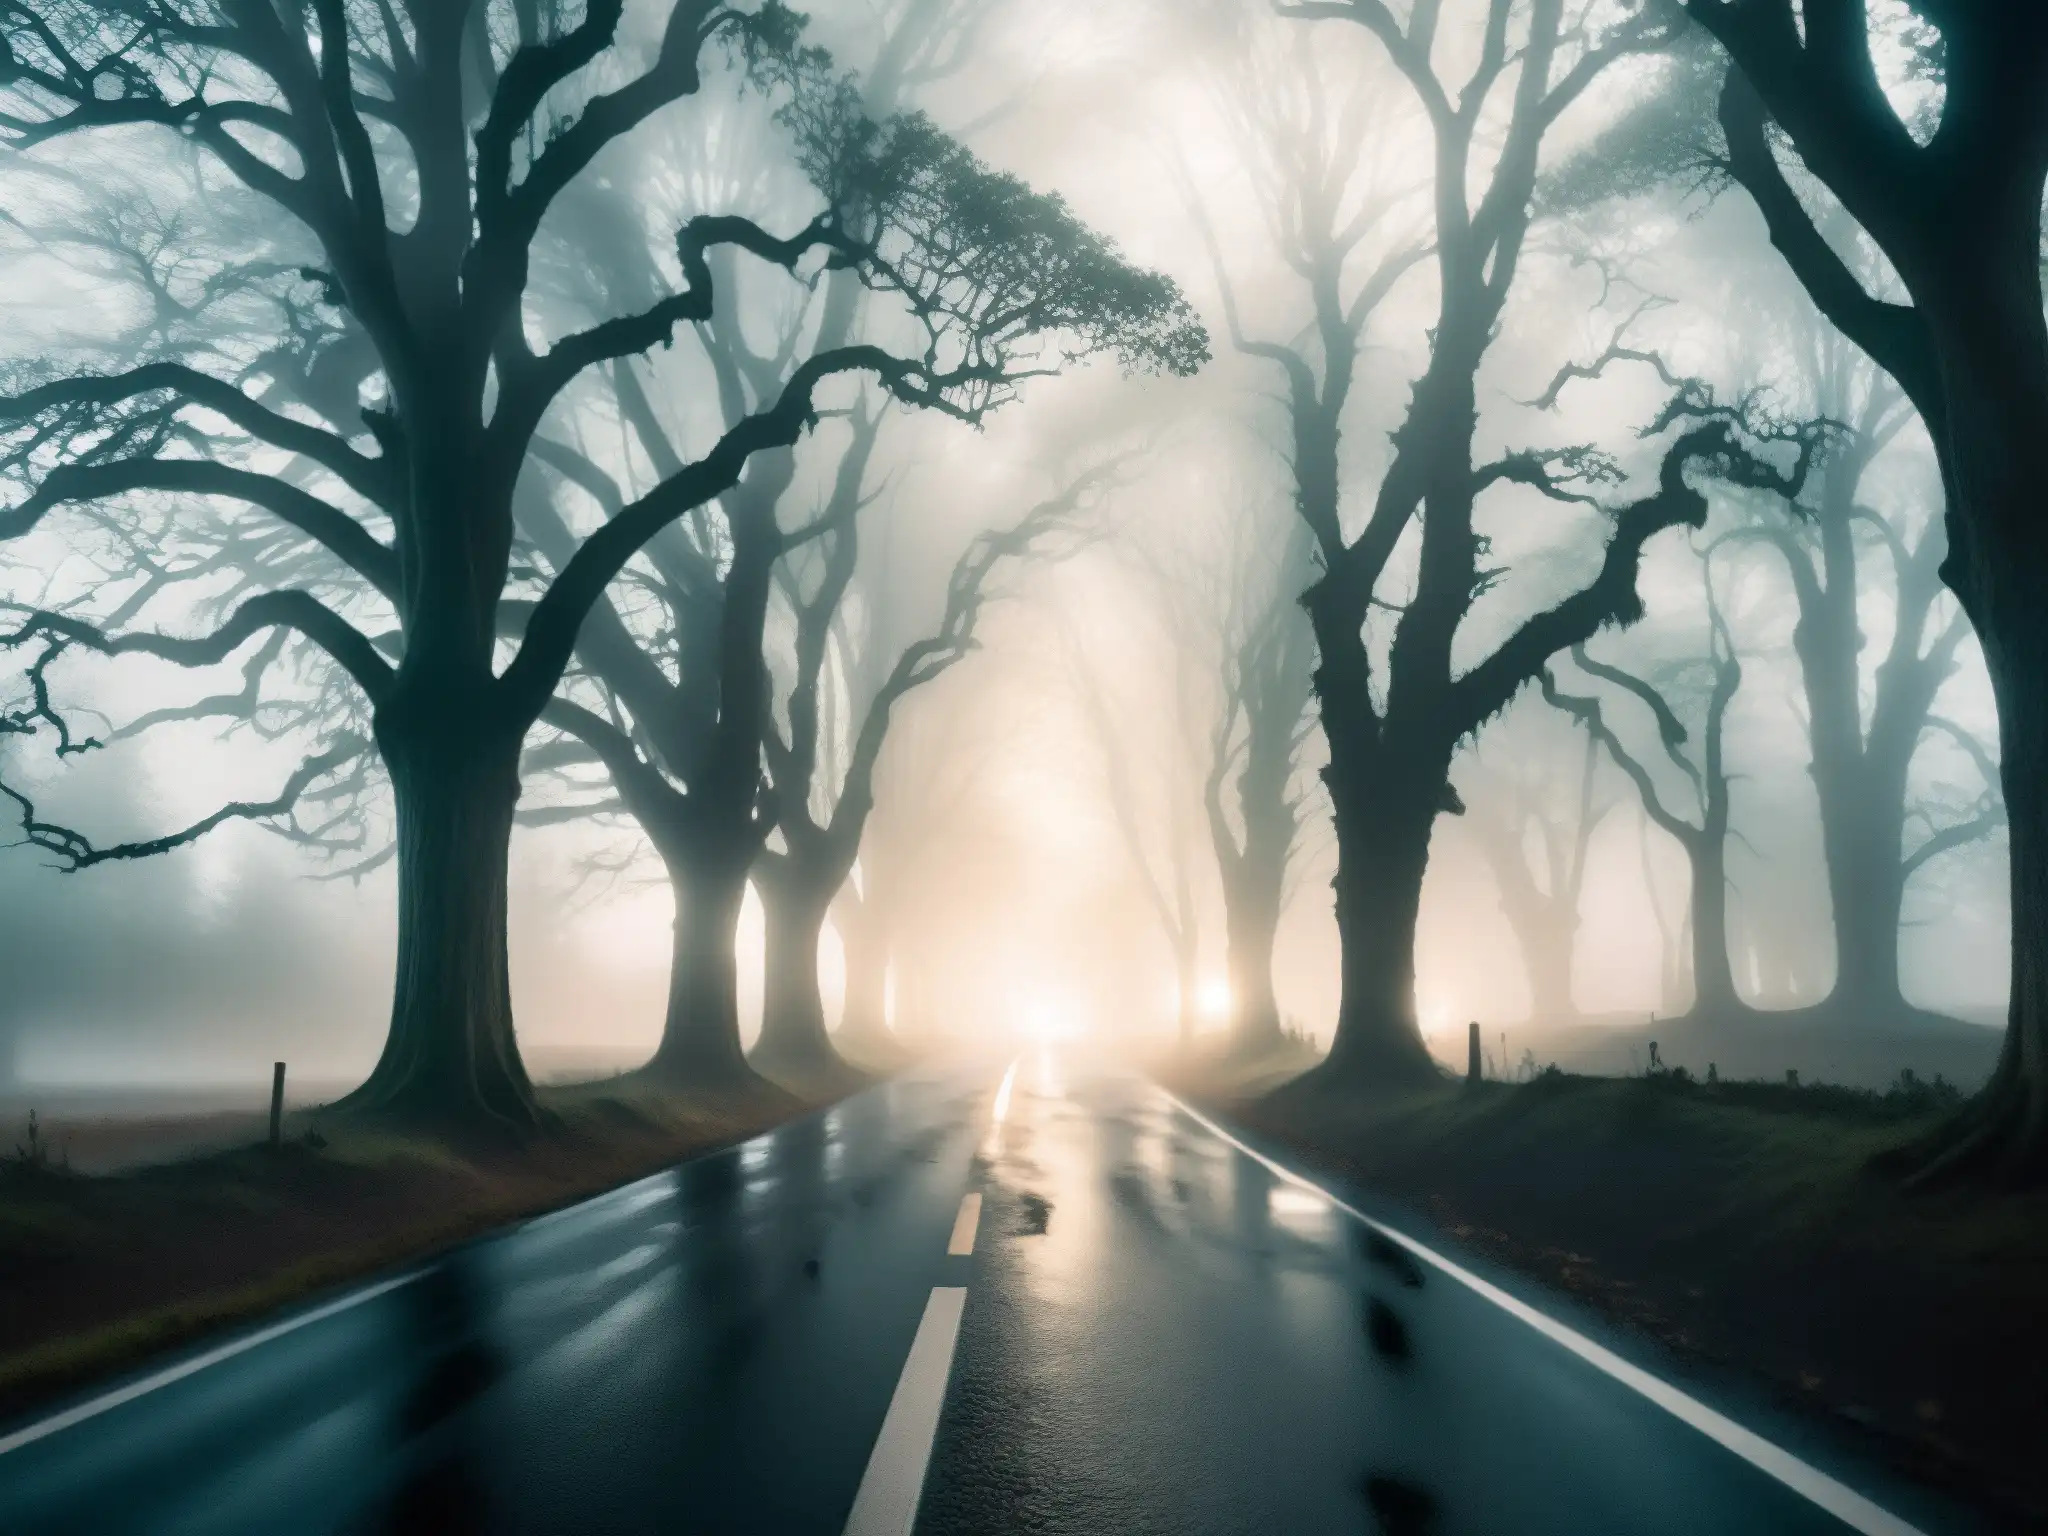 Una figura fantasmal en la neblina de la Carretera de Thane, rodeada de un resplandor misterioso entre árboles tenebrosos